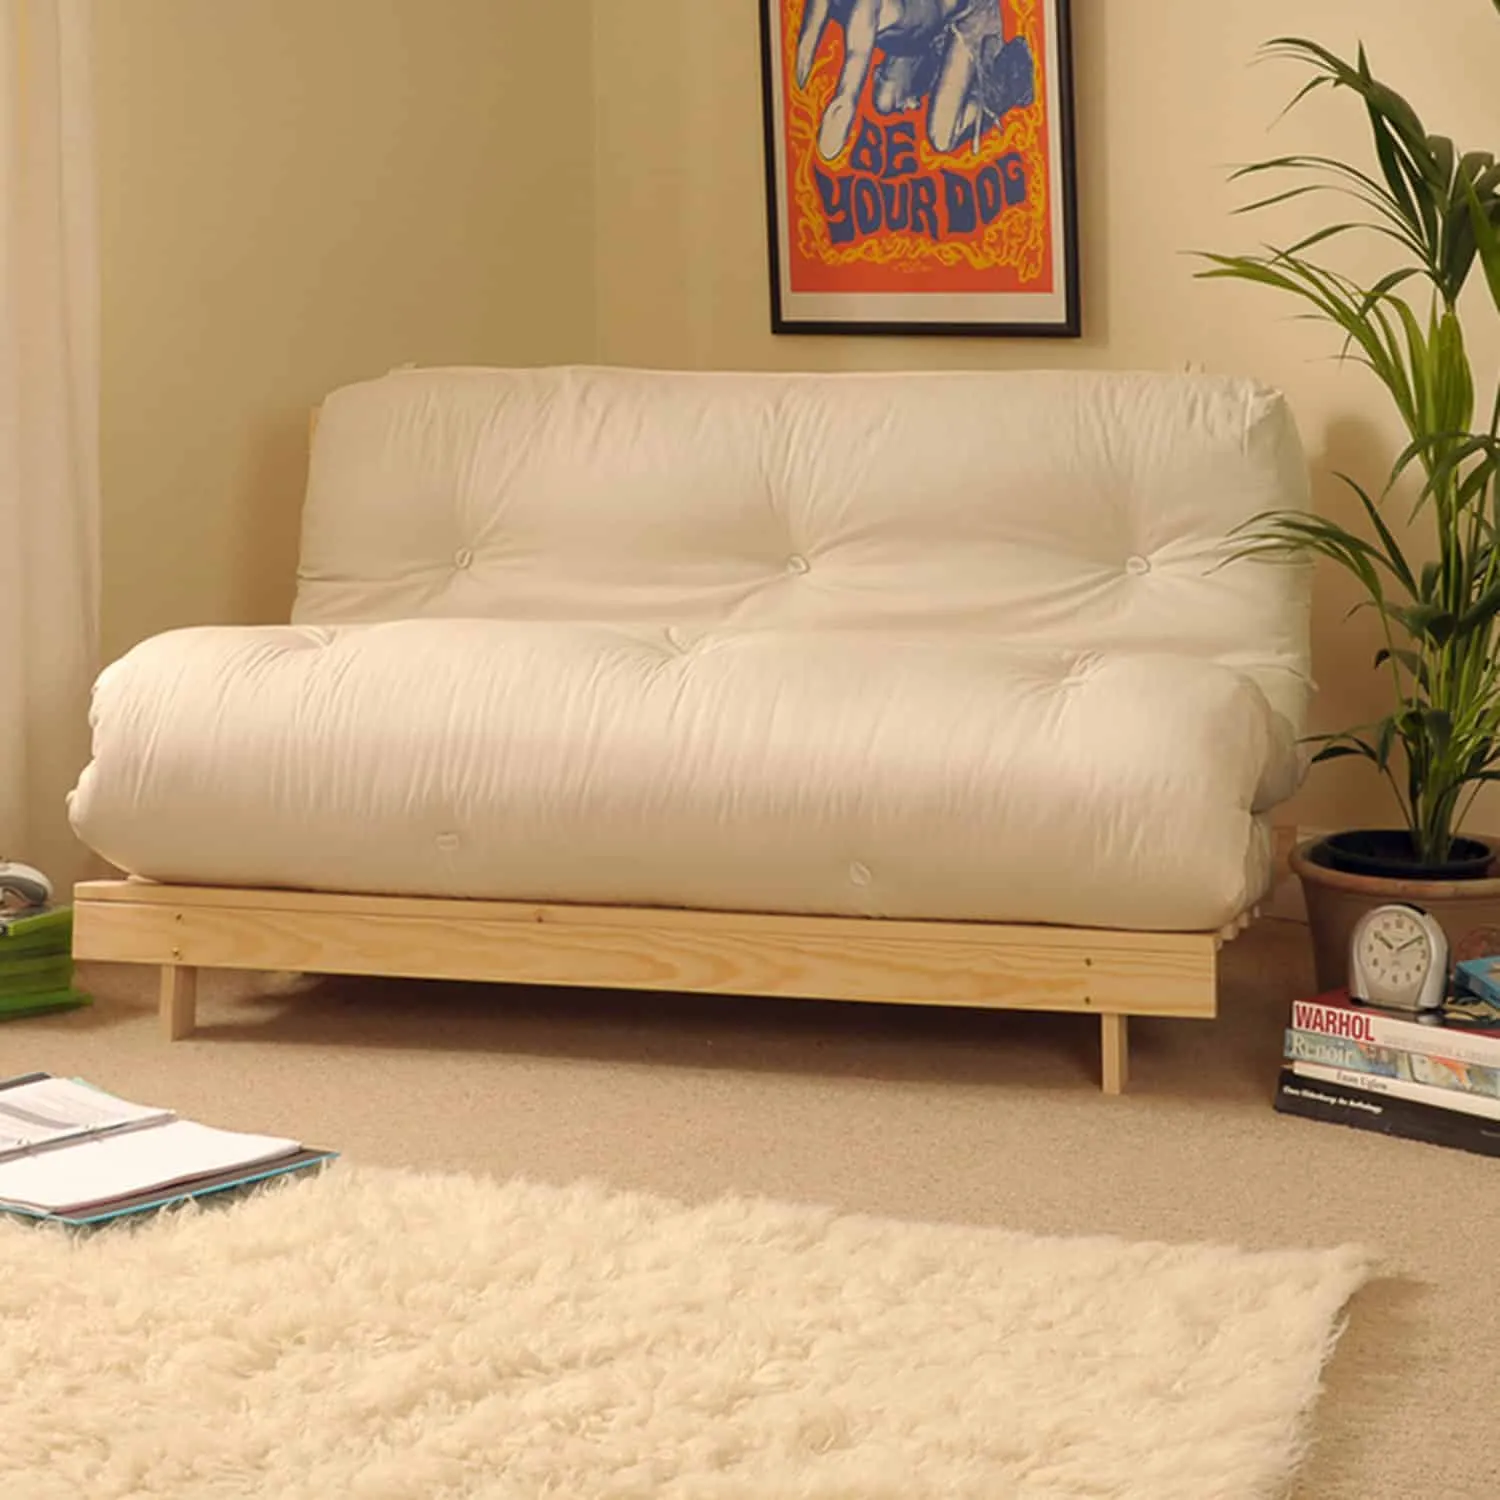 futon furniture, plants, wall hangings, white mattress, fur rug